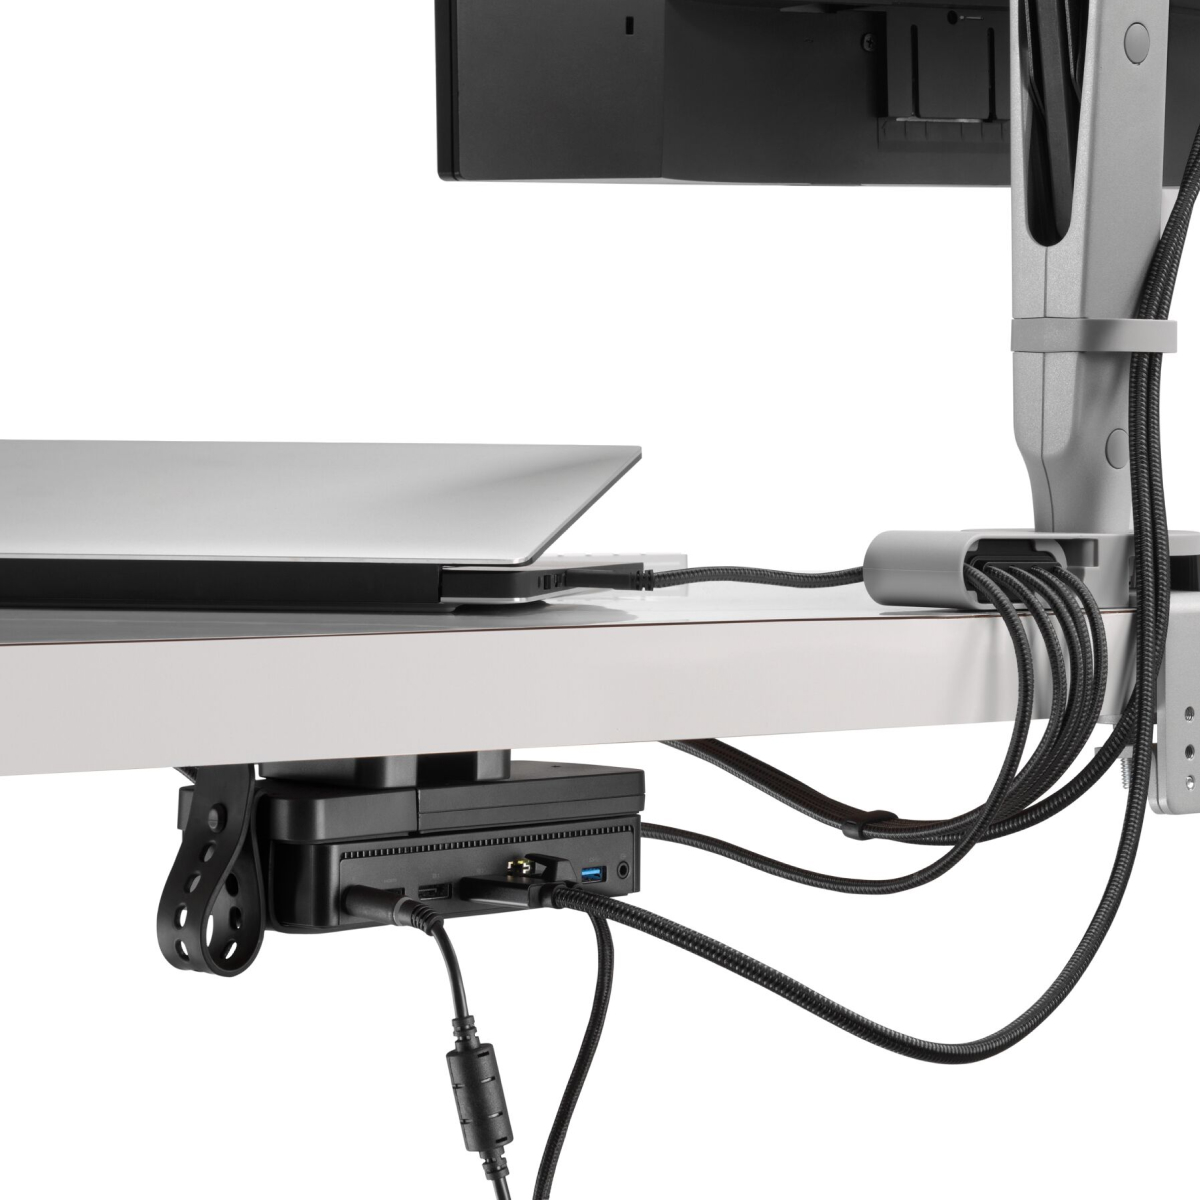 Schräge Rückansicht eines Monitors mit Strom- und Datenkabeln, die vom zugehörigen Monitorarm und durch ein Ondo Verbindungsmodul zu einem Laptop und einer Loop Micro Gerätehalterung unter einem Schreibtisch verlaufen.